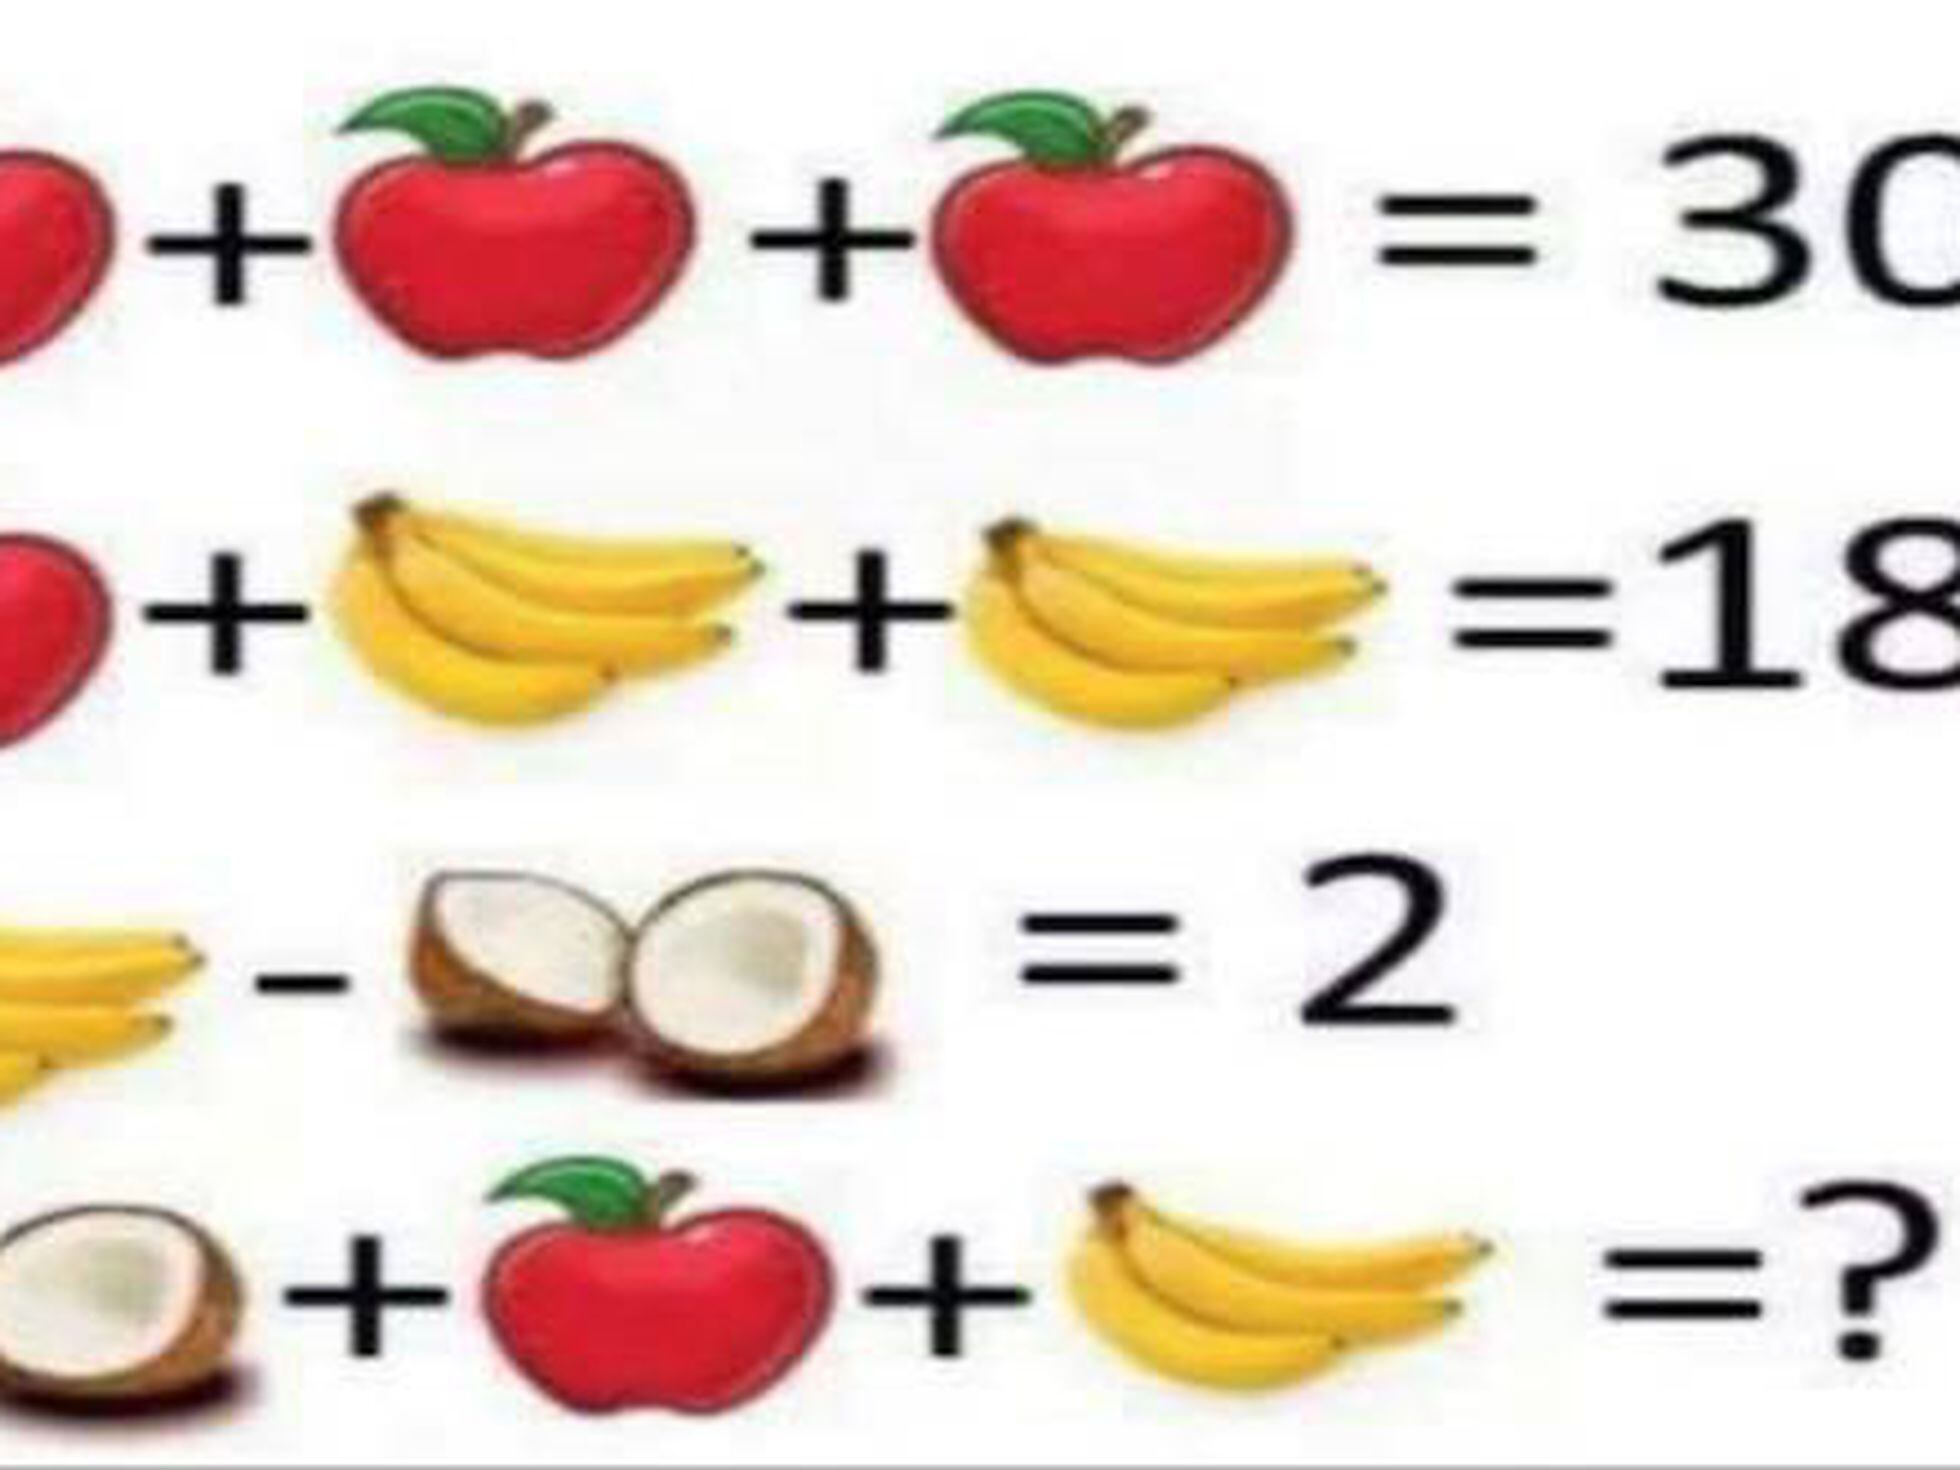 Problema de matemática com frutas faz sucesso nas redes sociais  Problemas  de matemática, Desafios de matemática, Matemática simples